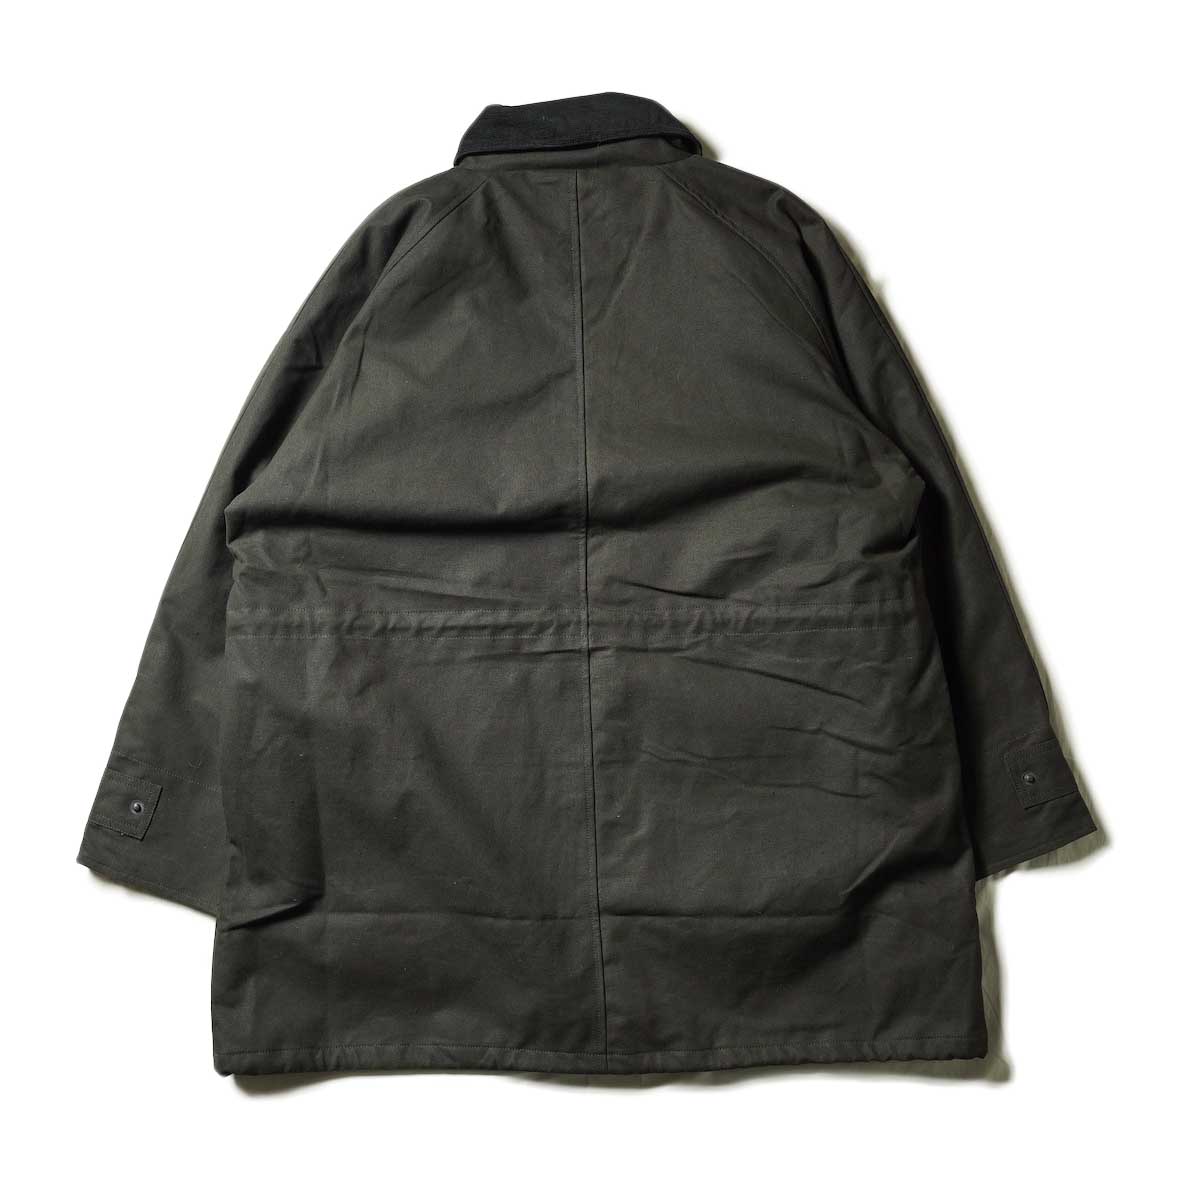 PORTRAITE / Classic Field Jacket Long - Canvas (Black)背面